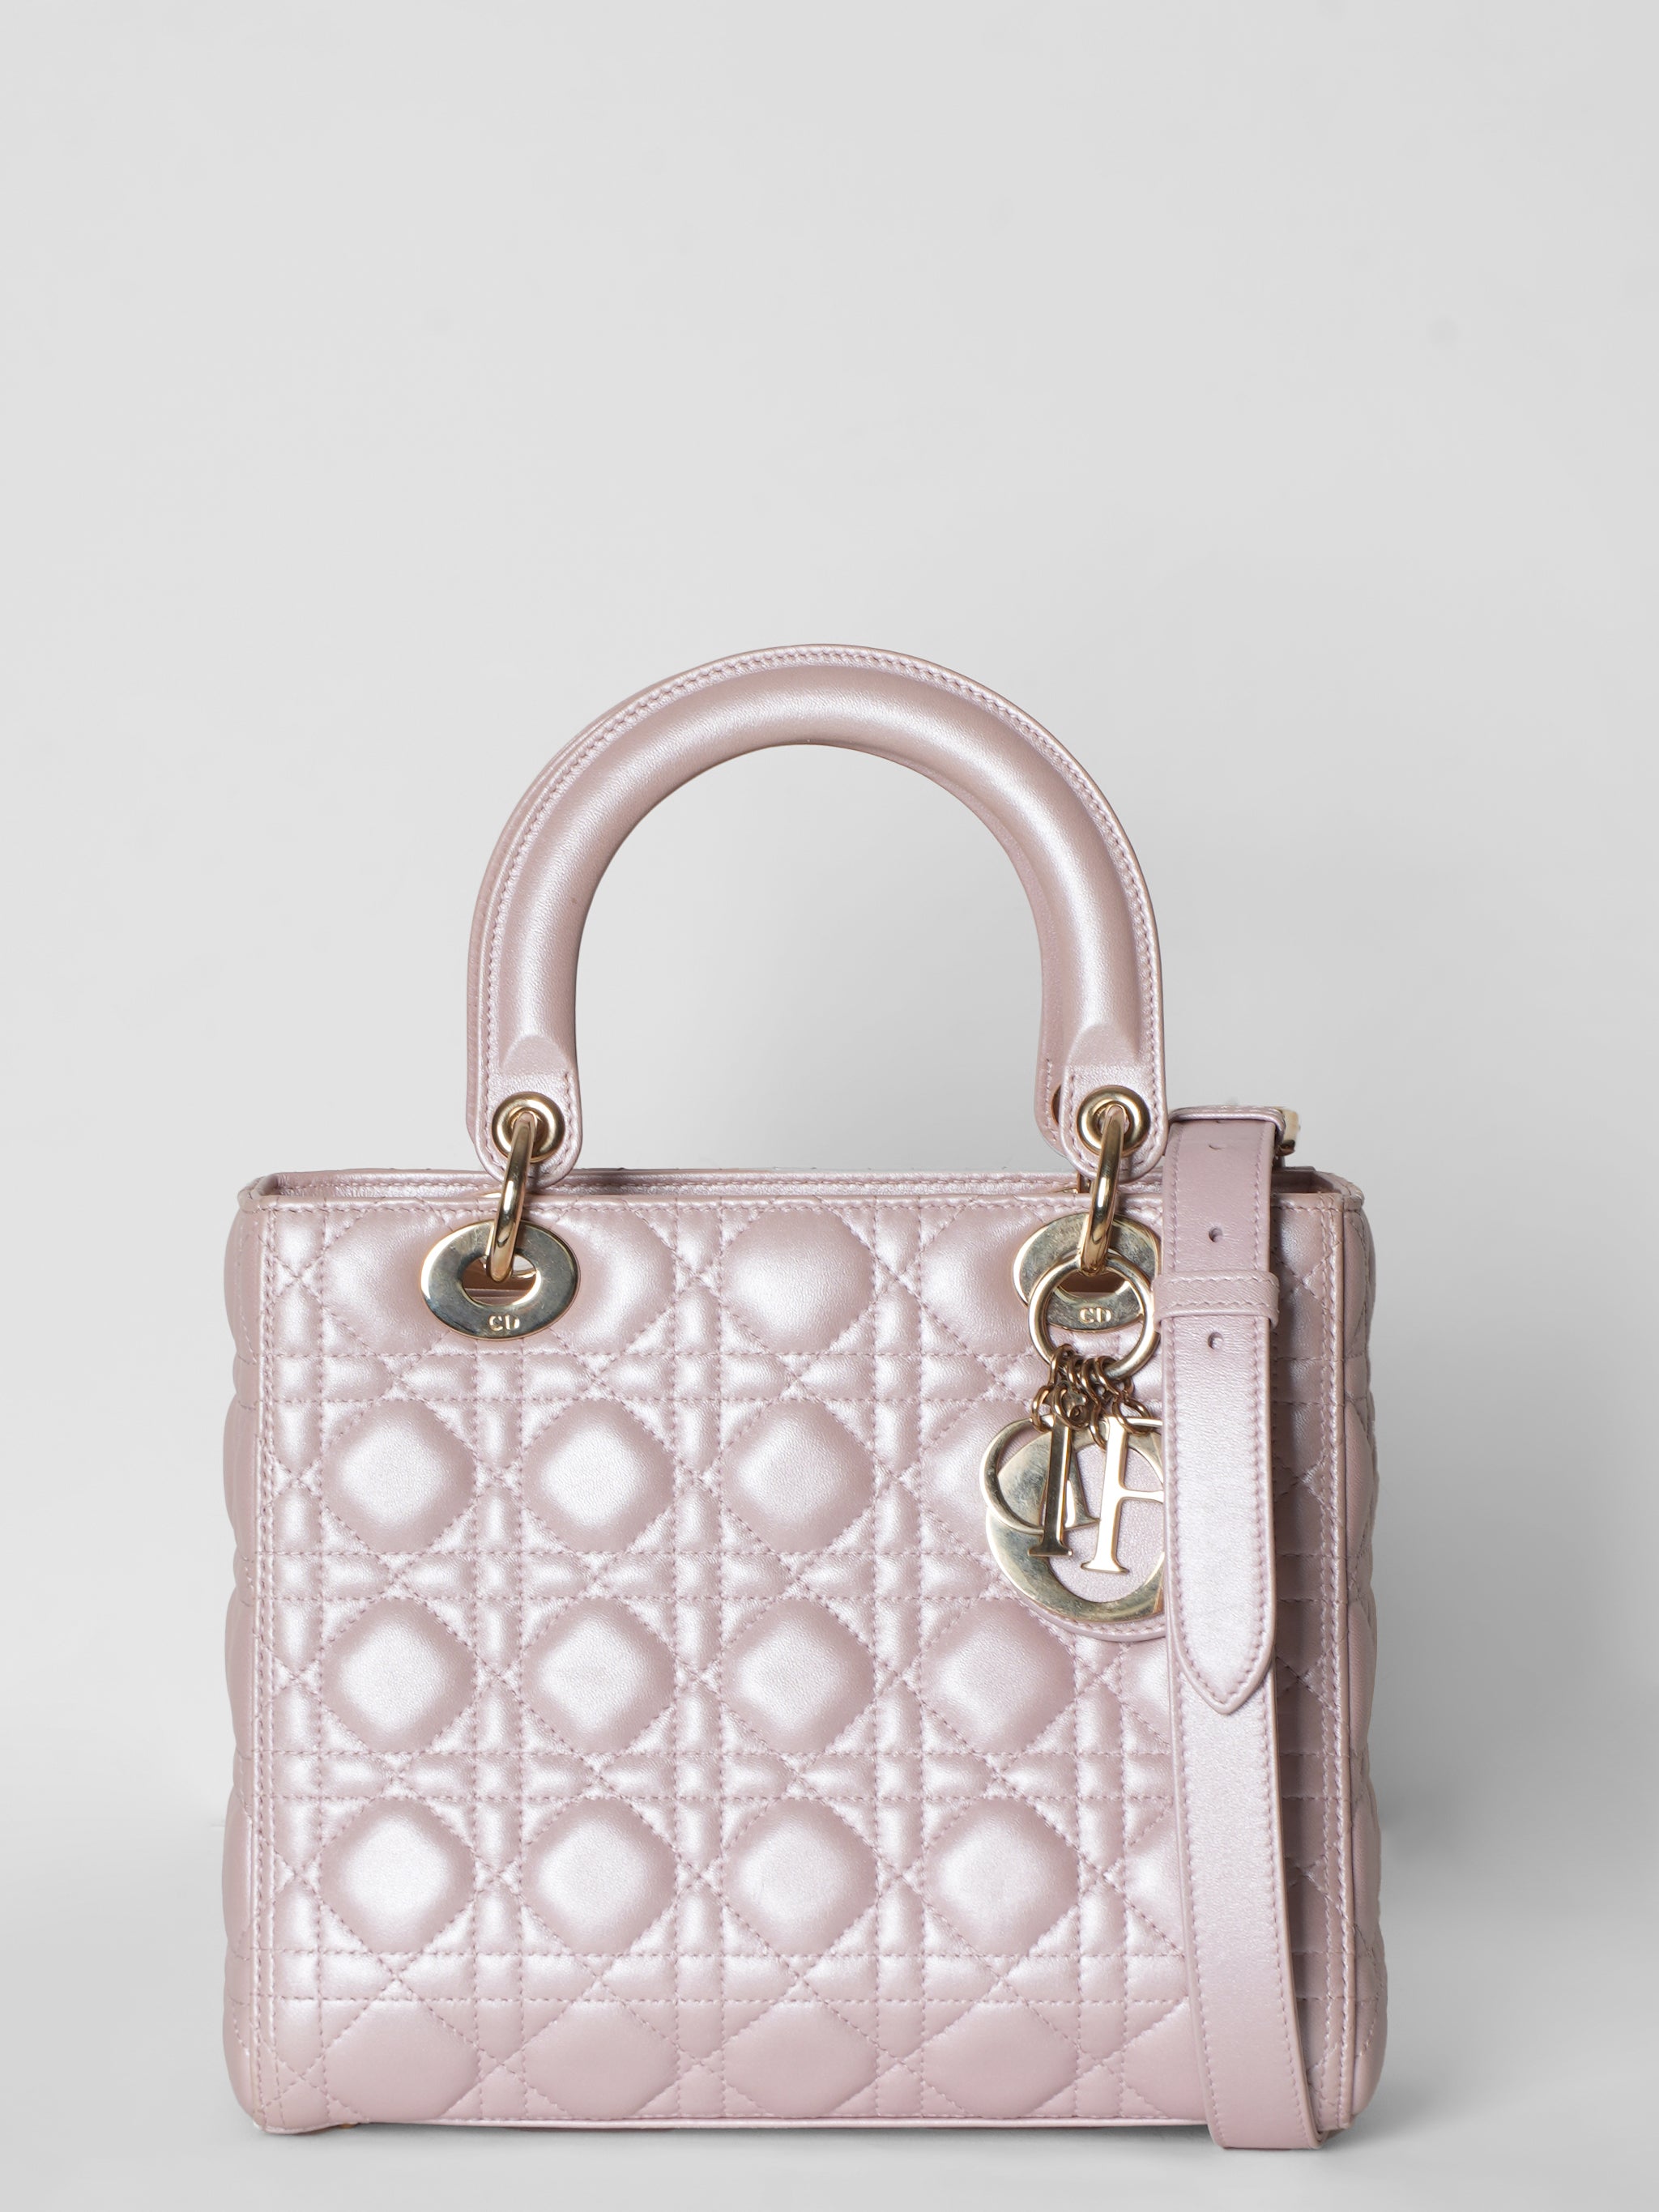 Lady Dior Medium Cannage Bag In Pink